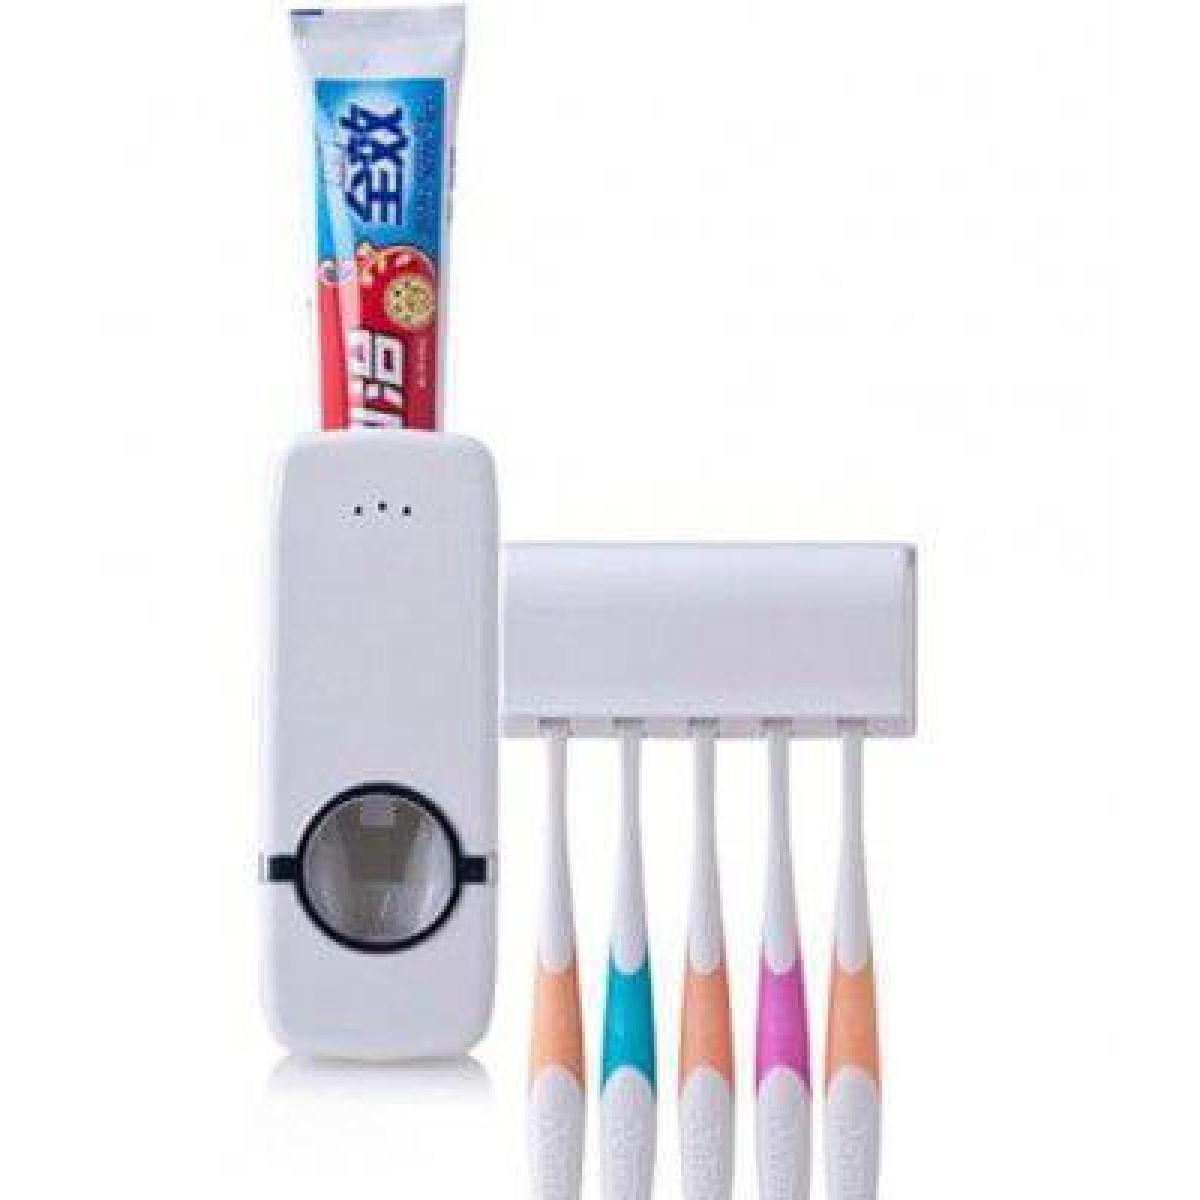 Επιτοίχια Βάση Για 5 Οδοντόβουρτσες Και Οδοντόκρεμα JX-2000